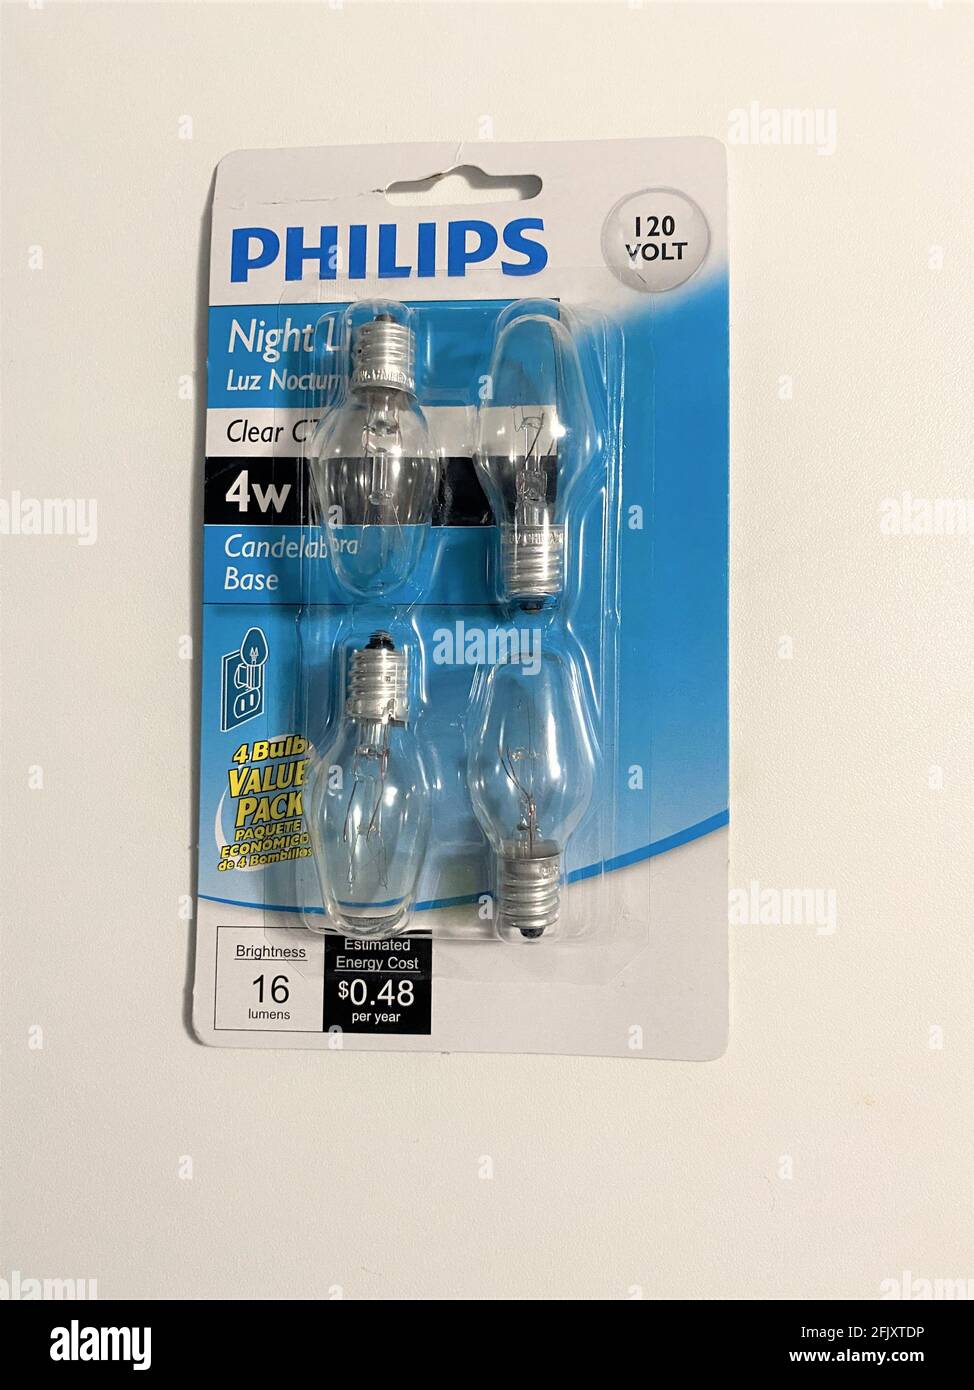 Un paquete de bombillas de luz nocturna de la marca Philips, transparentes, de 120 voltios. Bombillas de bajo consumo. Foto de stock